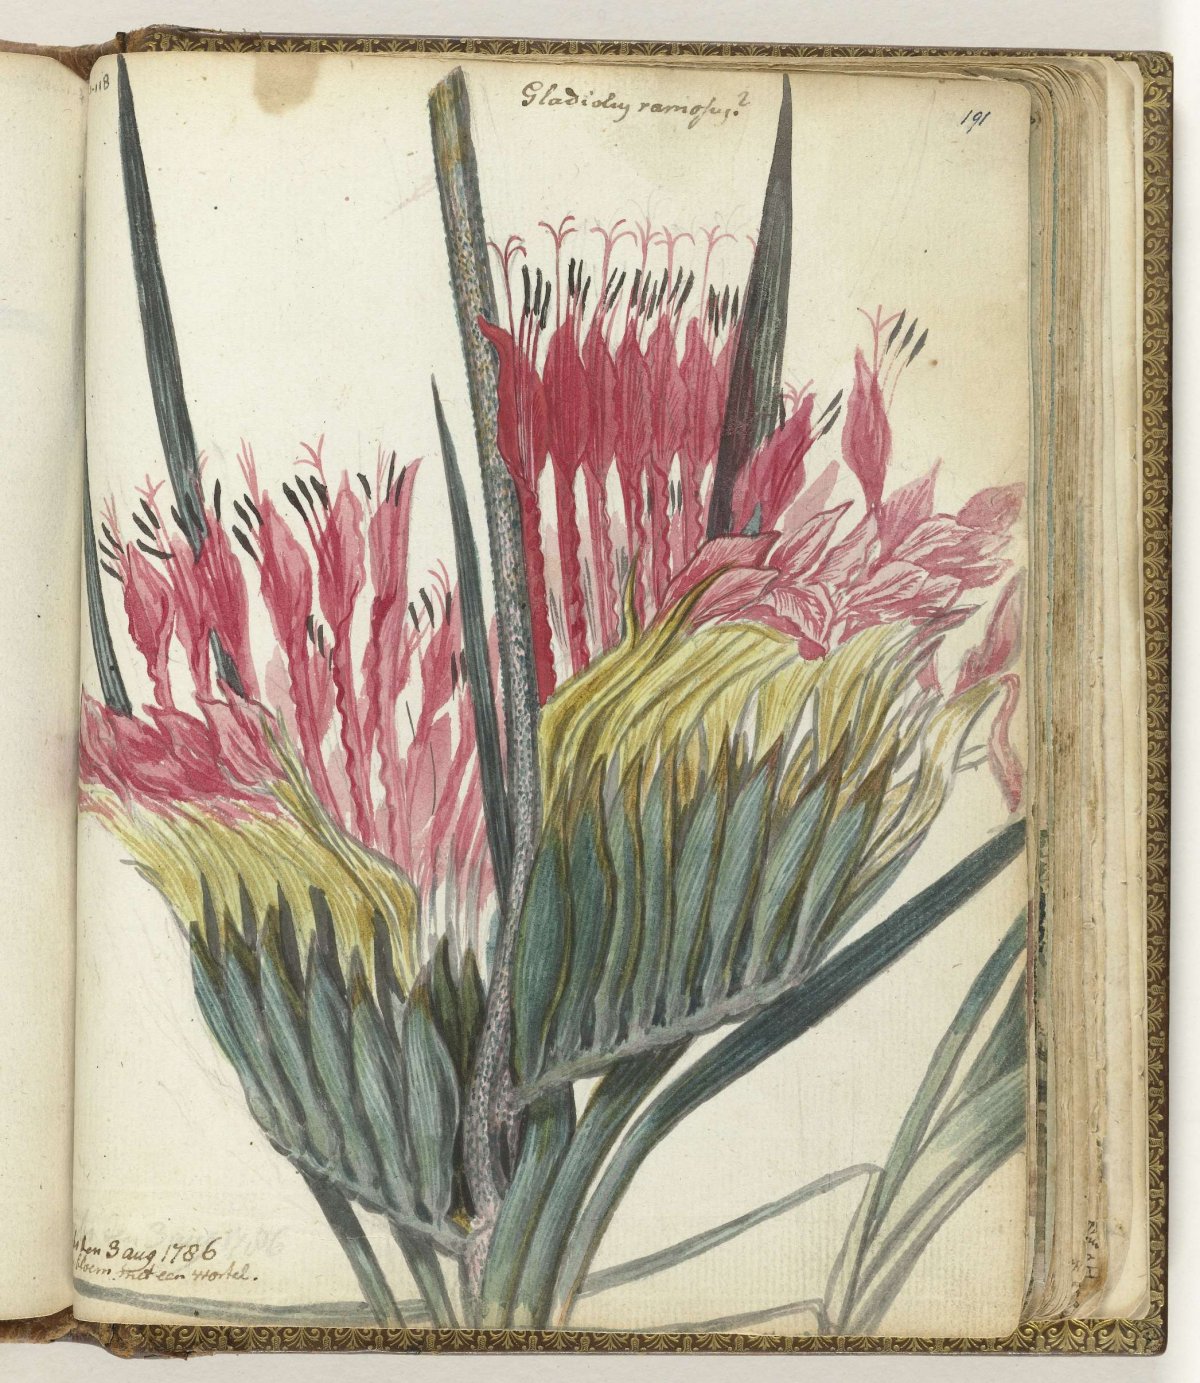 Kaapse bloem, Jan Brandes, 1786